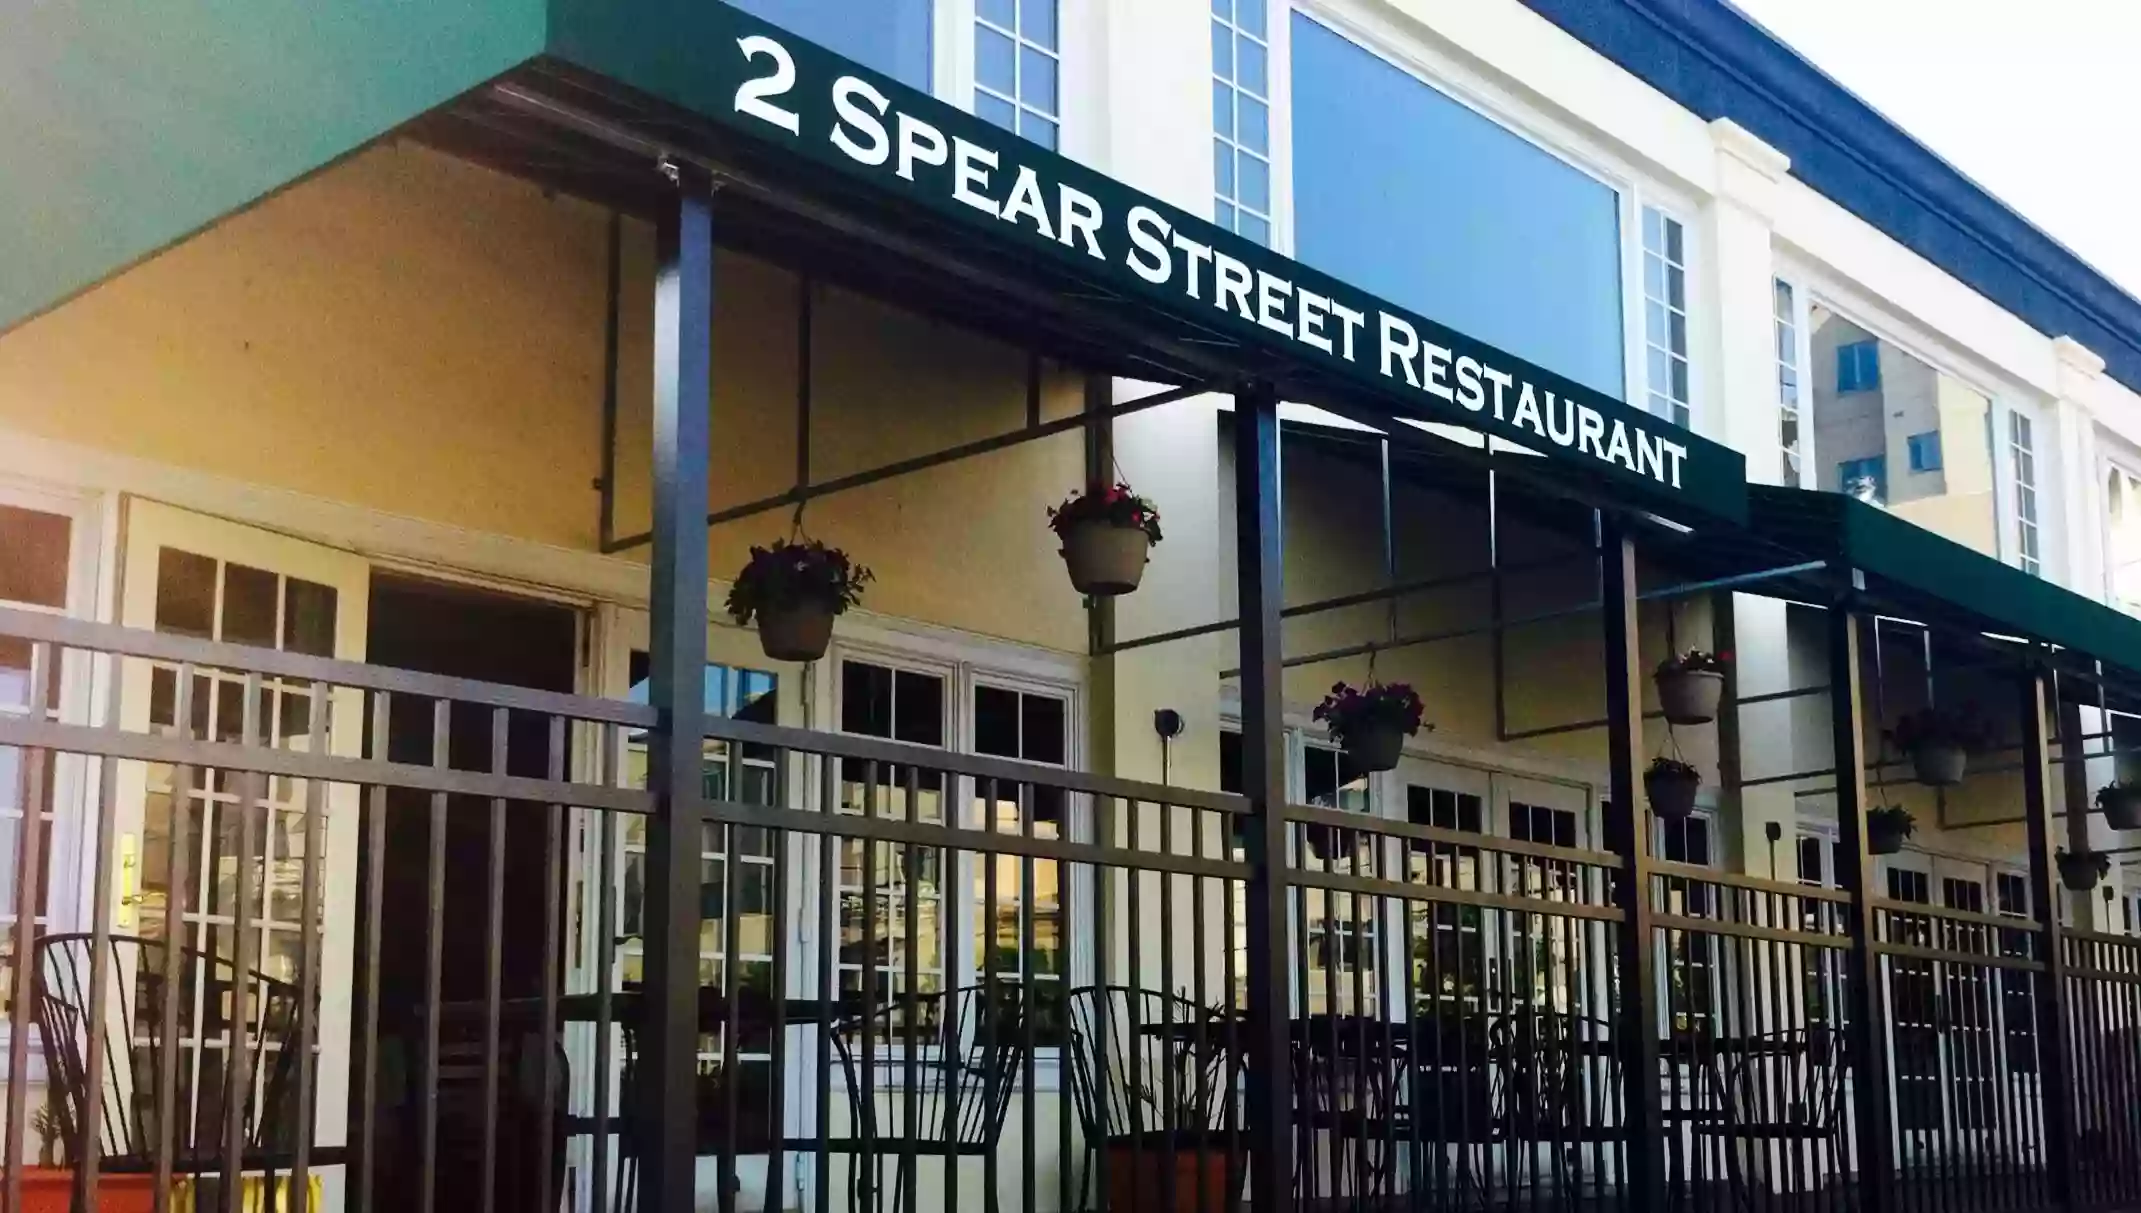 Two Spear Street